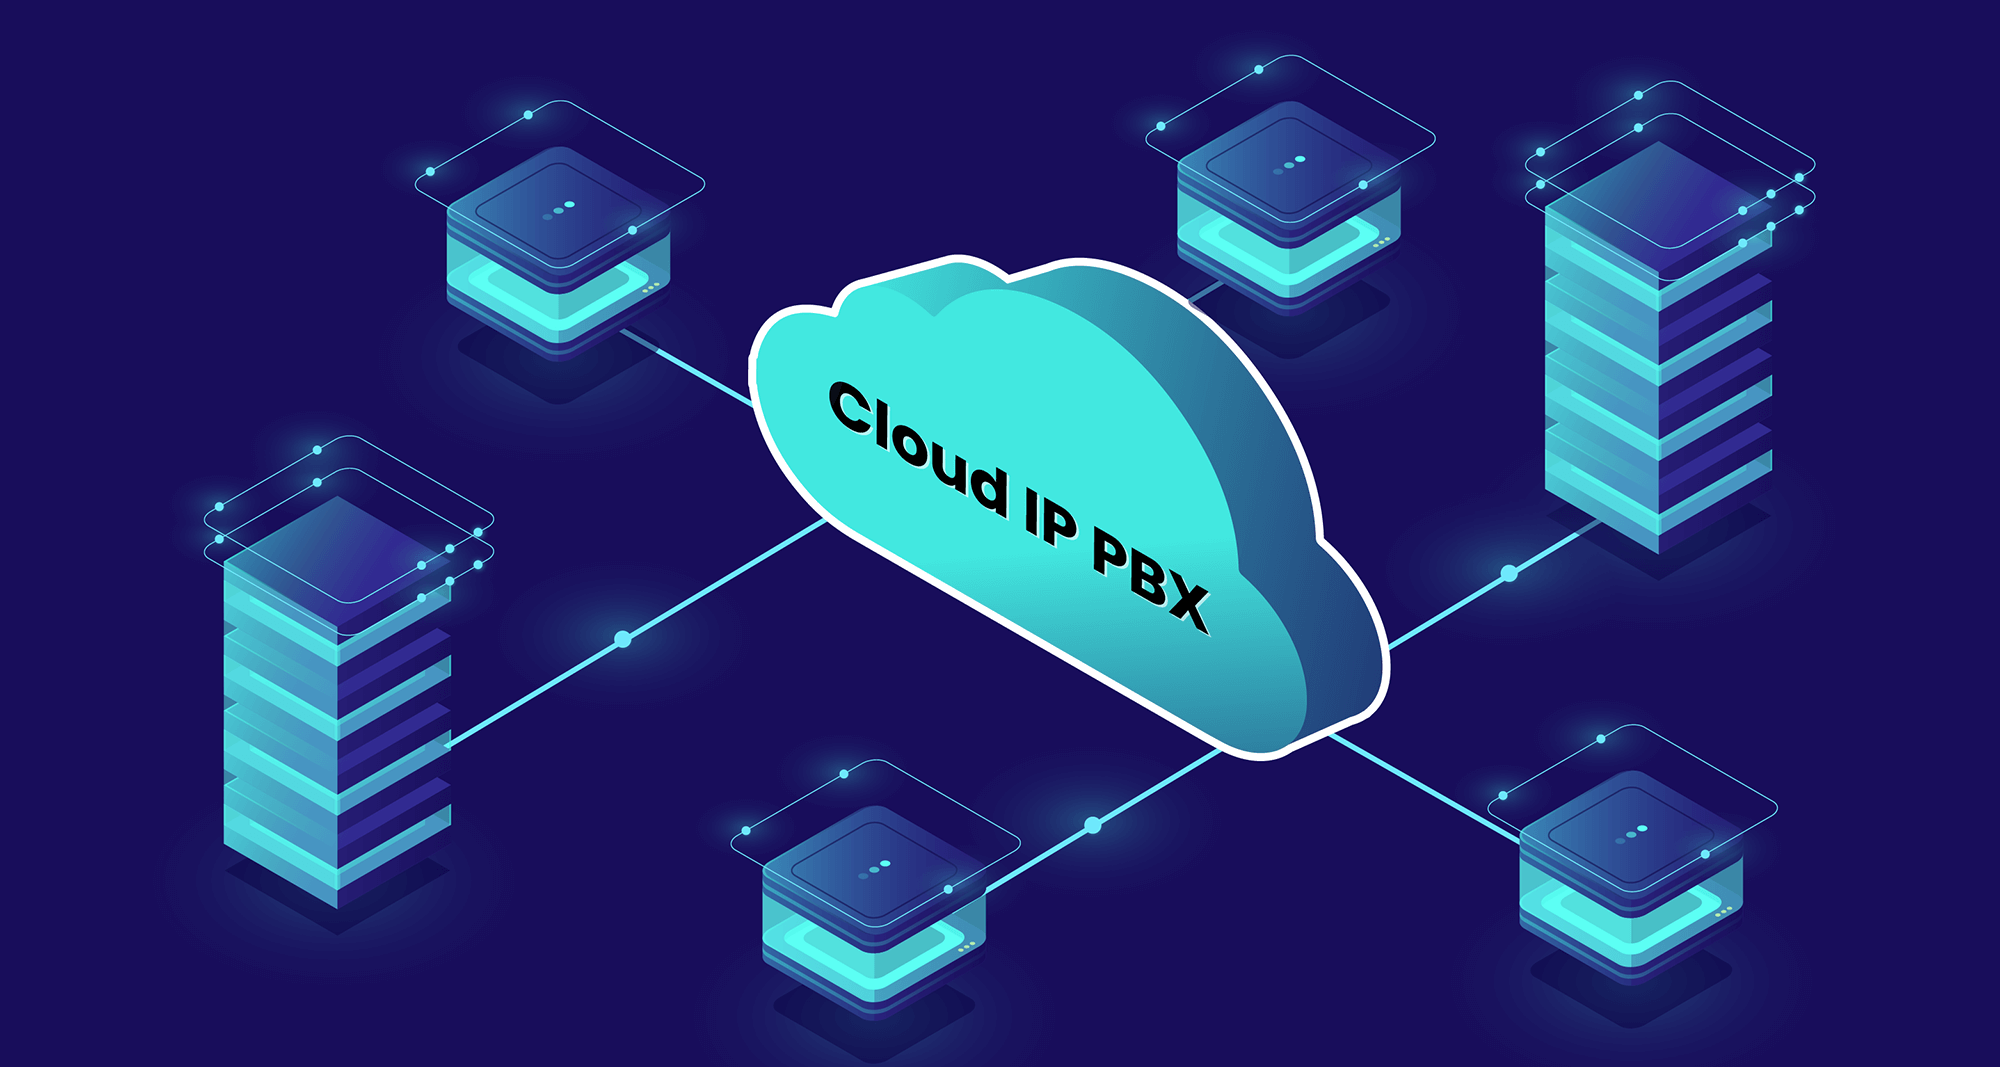 ประวัติ Cloud IP PBX หรือ ตู้สาขาบน Cloud Computing นวัตกรรมสำหรับองค์กรในยุคนี้